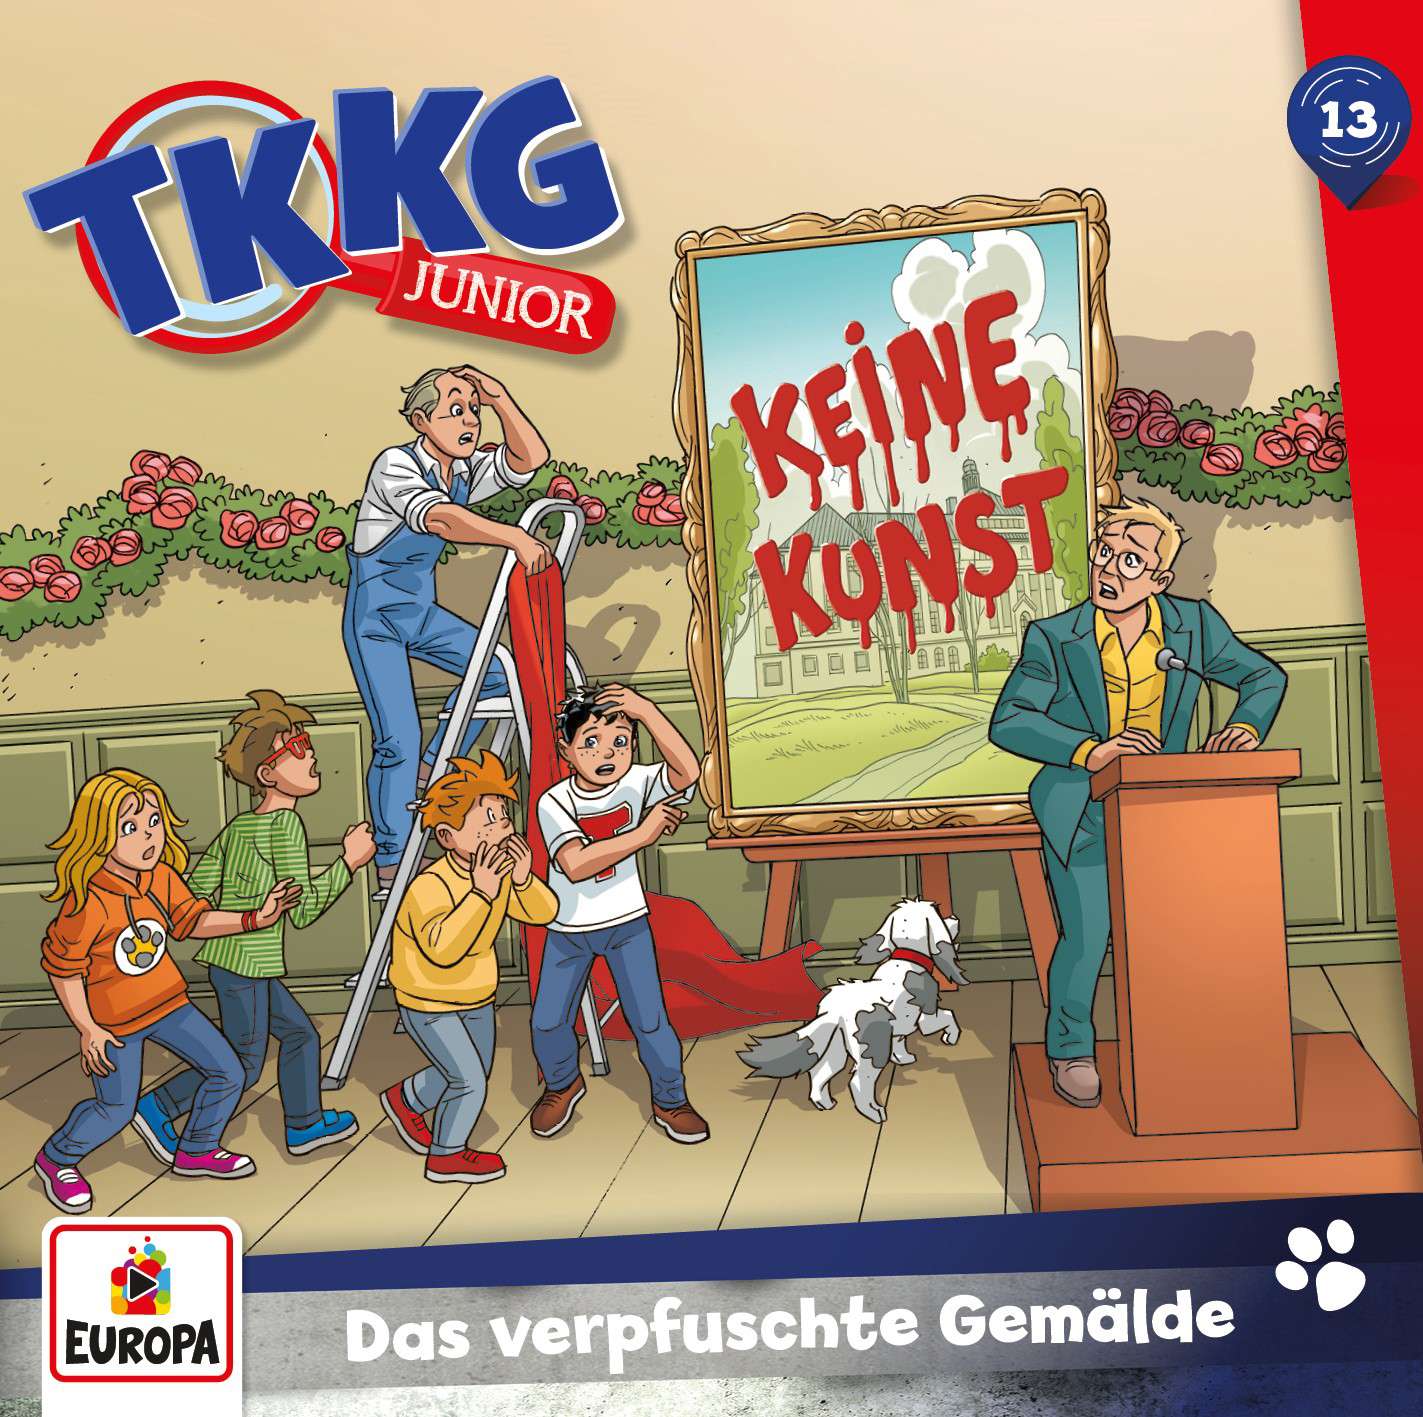 TKKG Junior Hörspiel-Folge 13: Das verpfuschte Gemälde